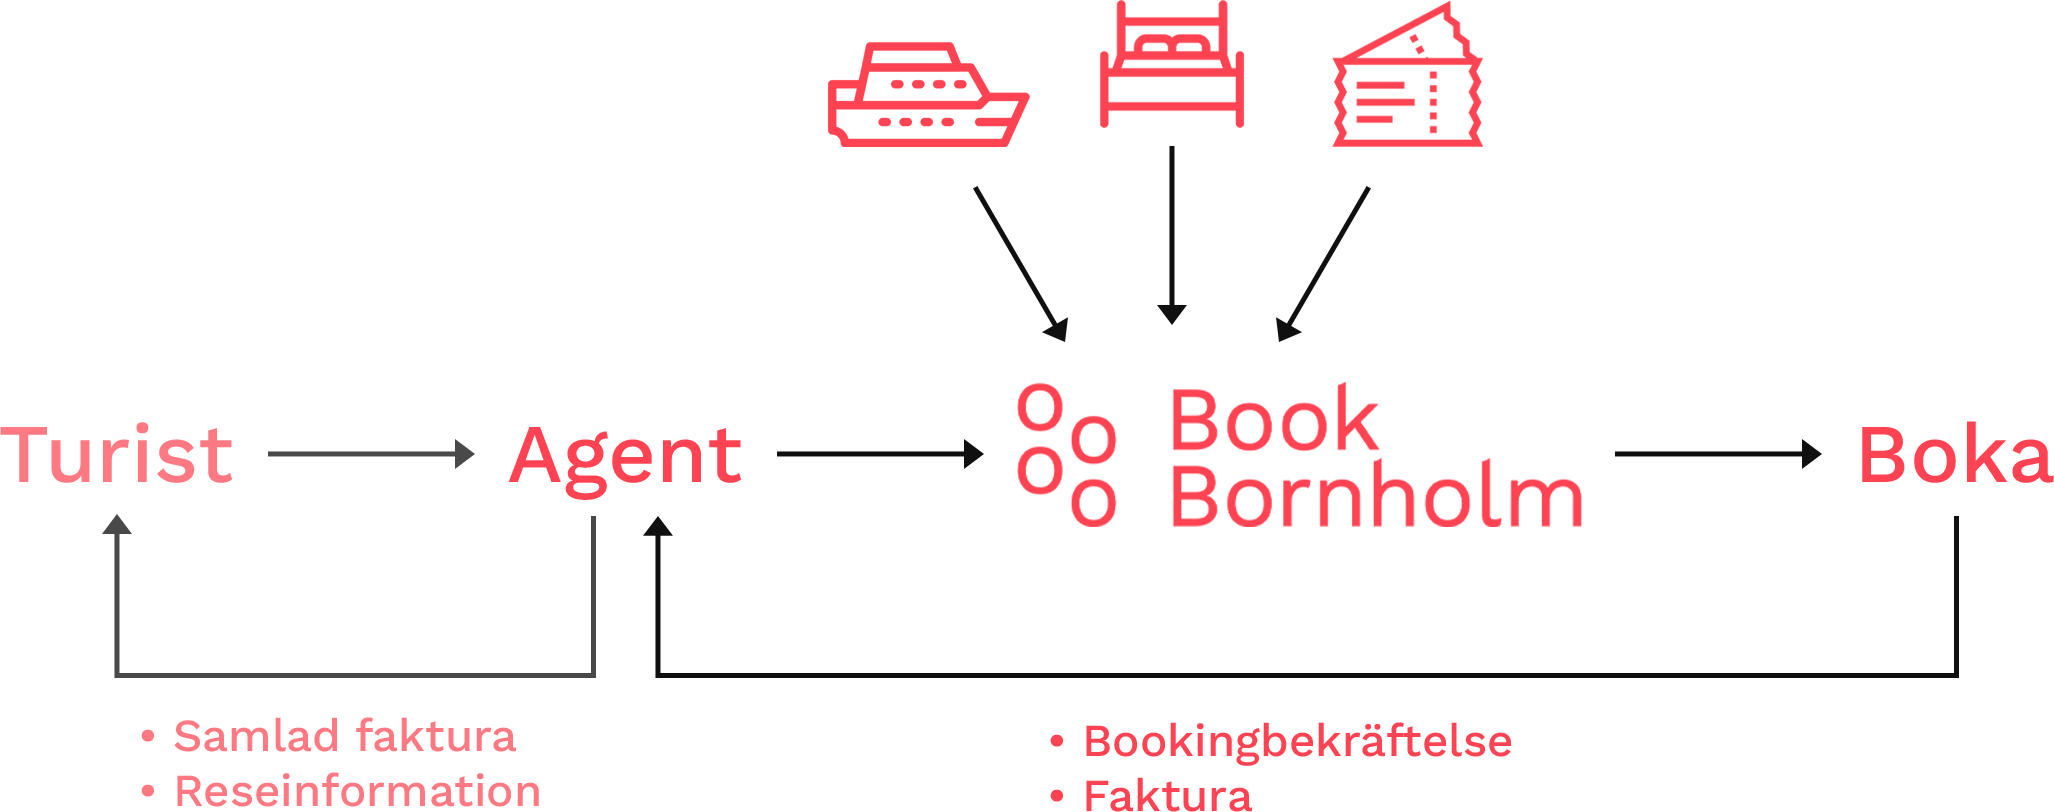 Model over samarbejde mellem Book Bornholm og rejseagent